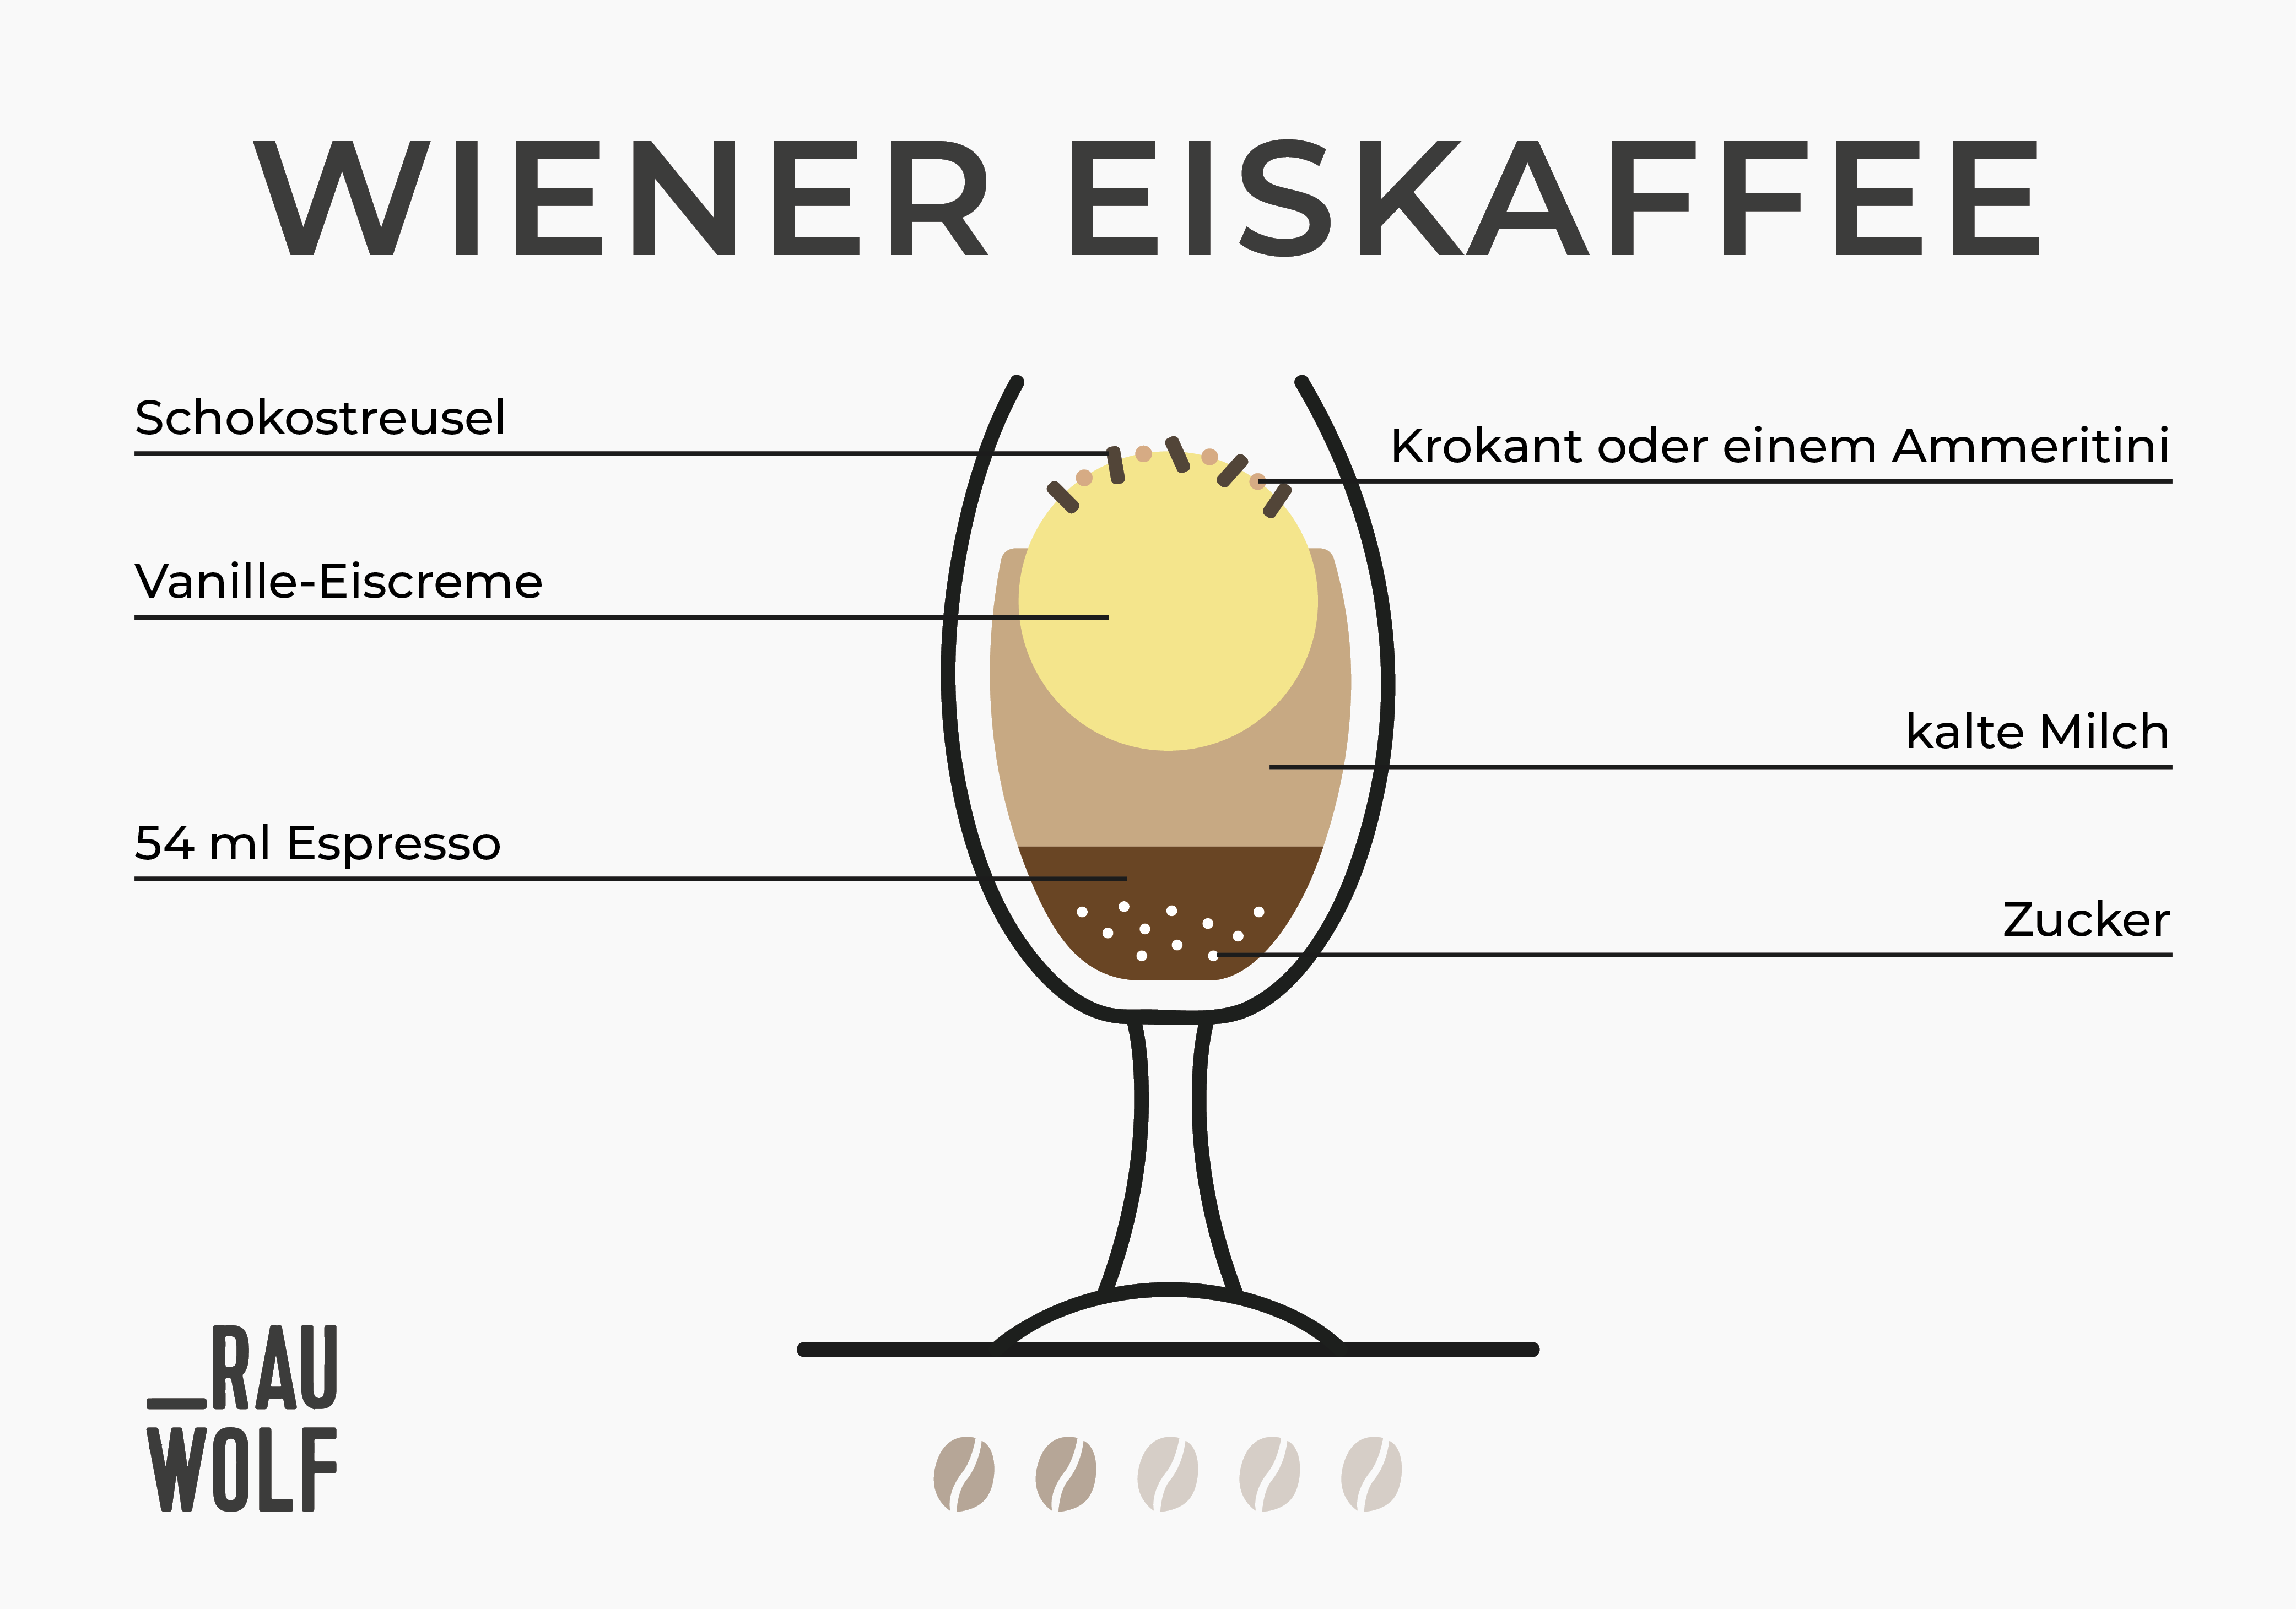 Wiener Eiskaffee